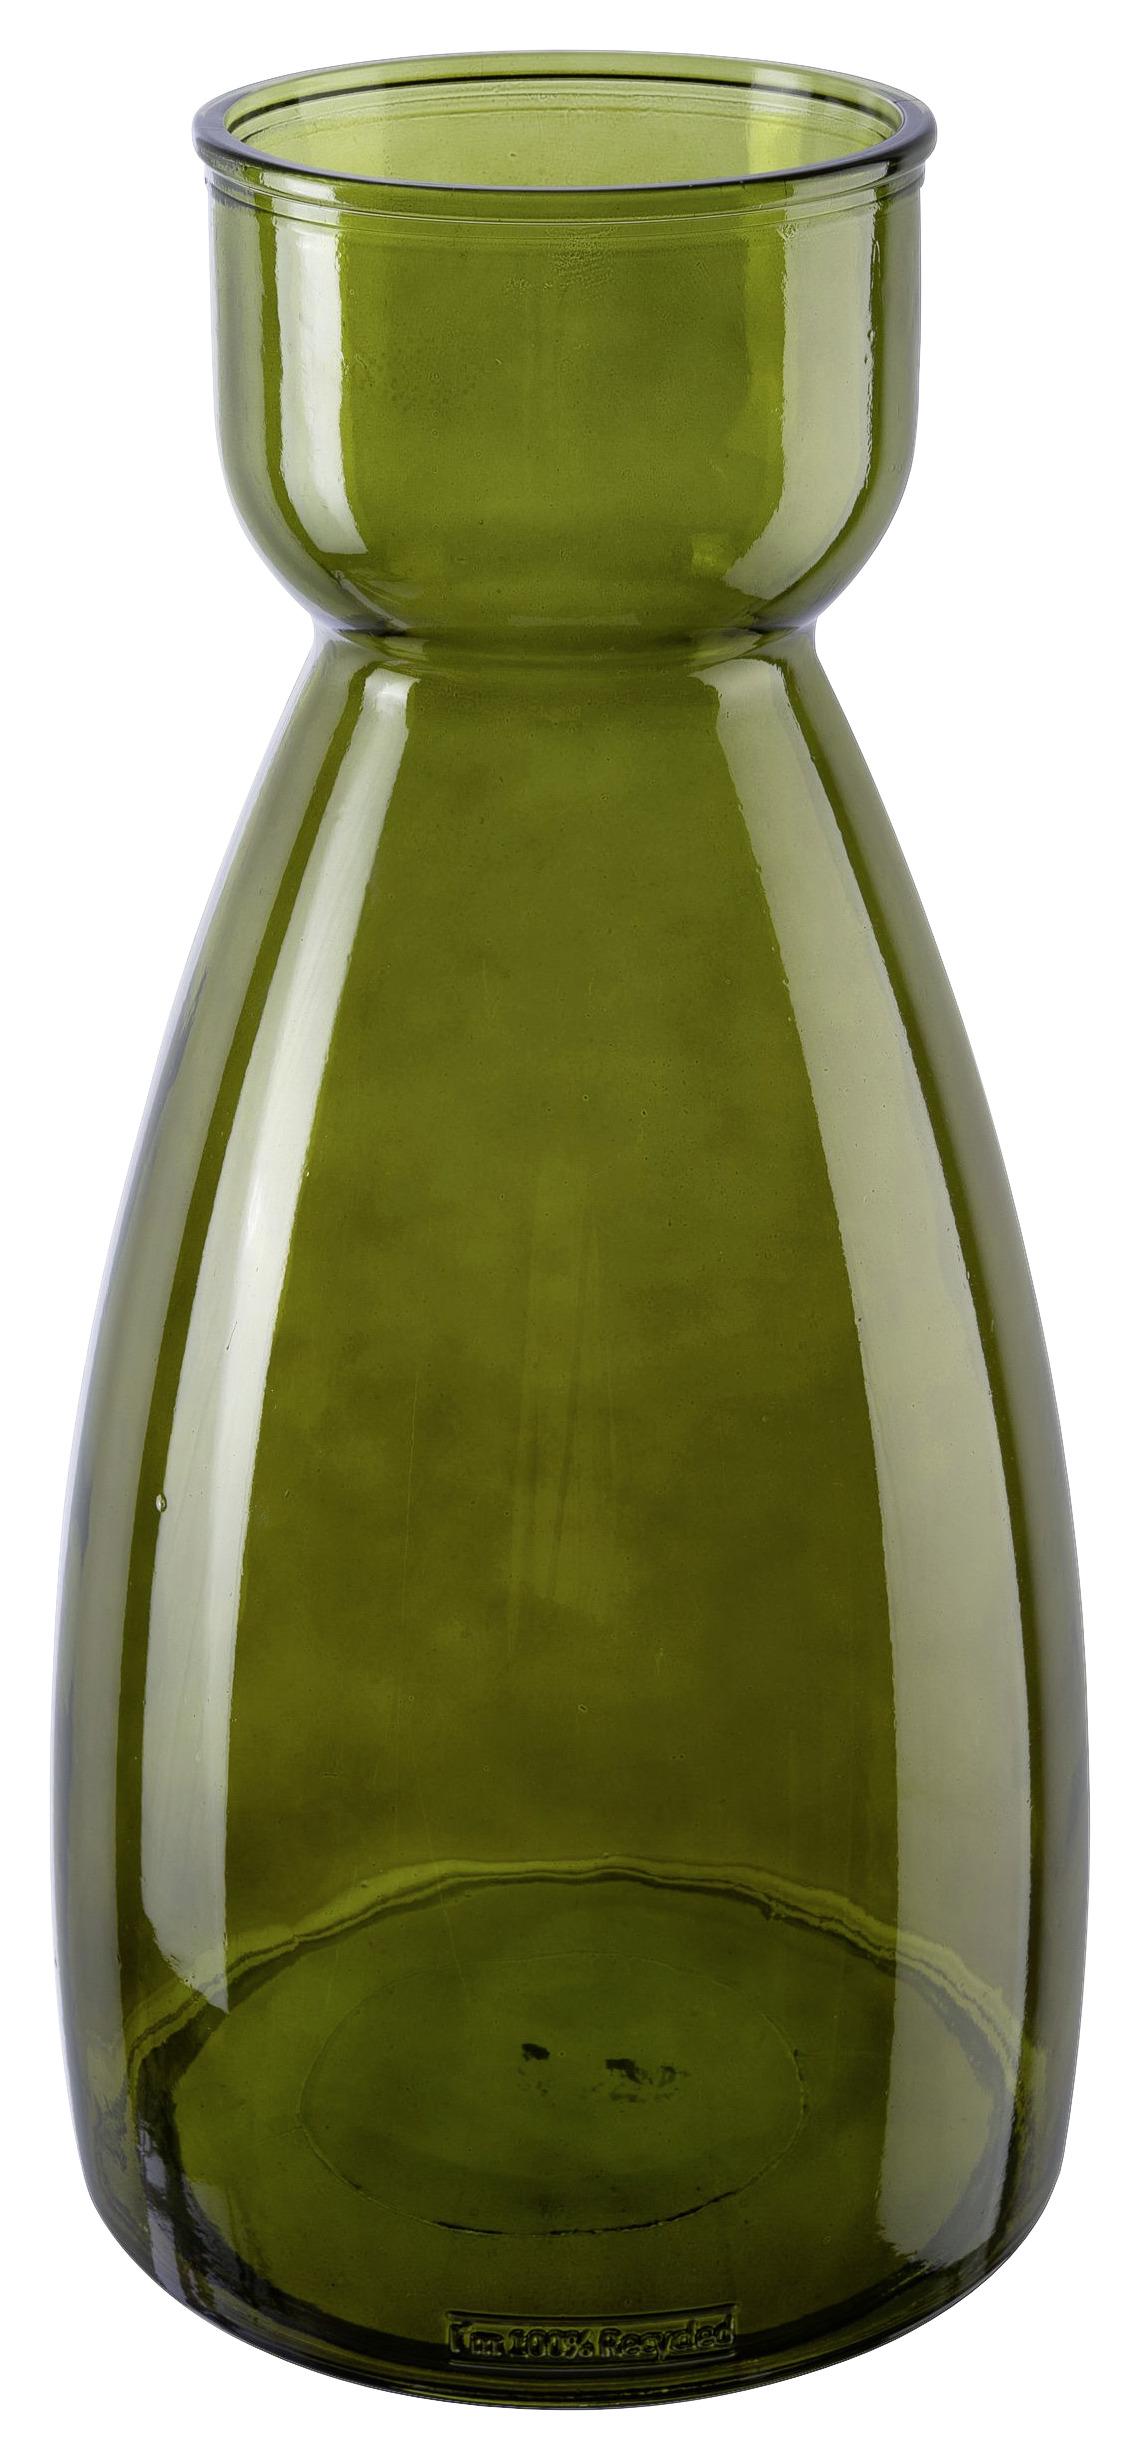 Vaza Paula I -Paz- - temno zelena, Moderno, steklo (22/44cm) - Premium Living